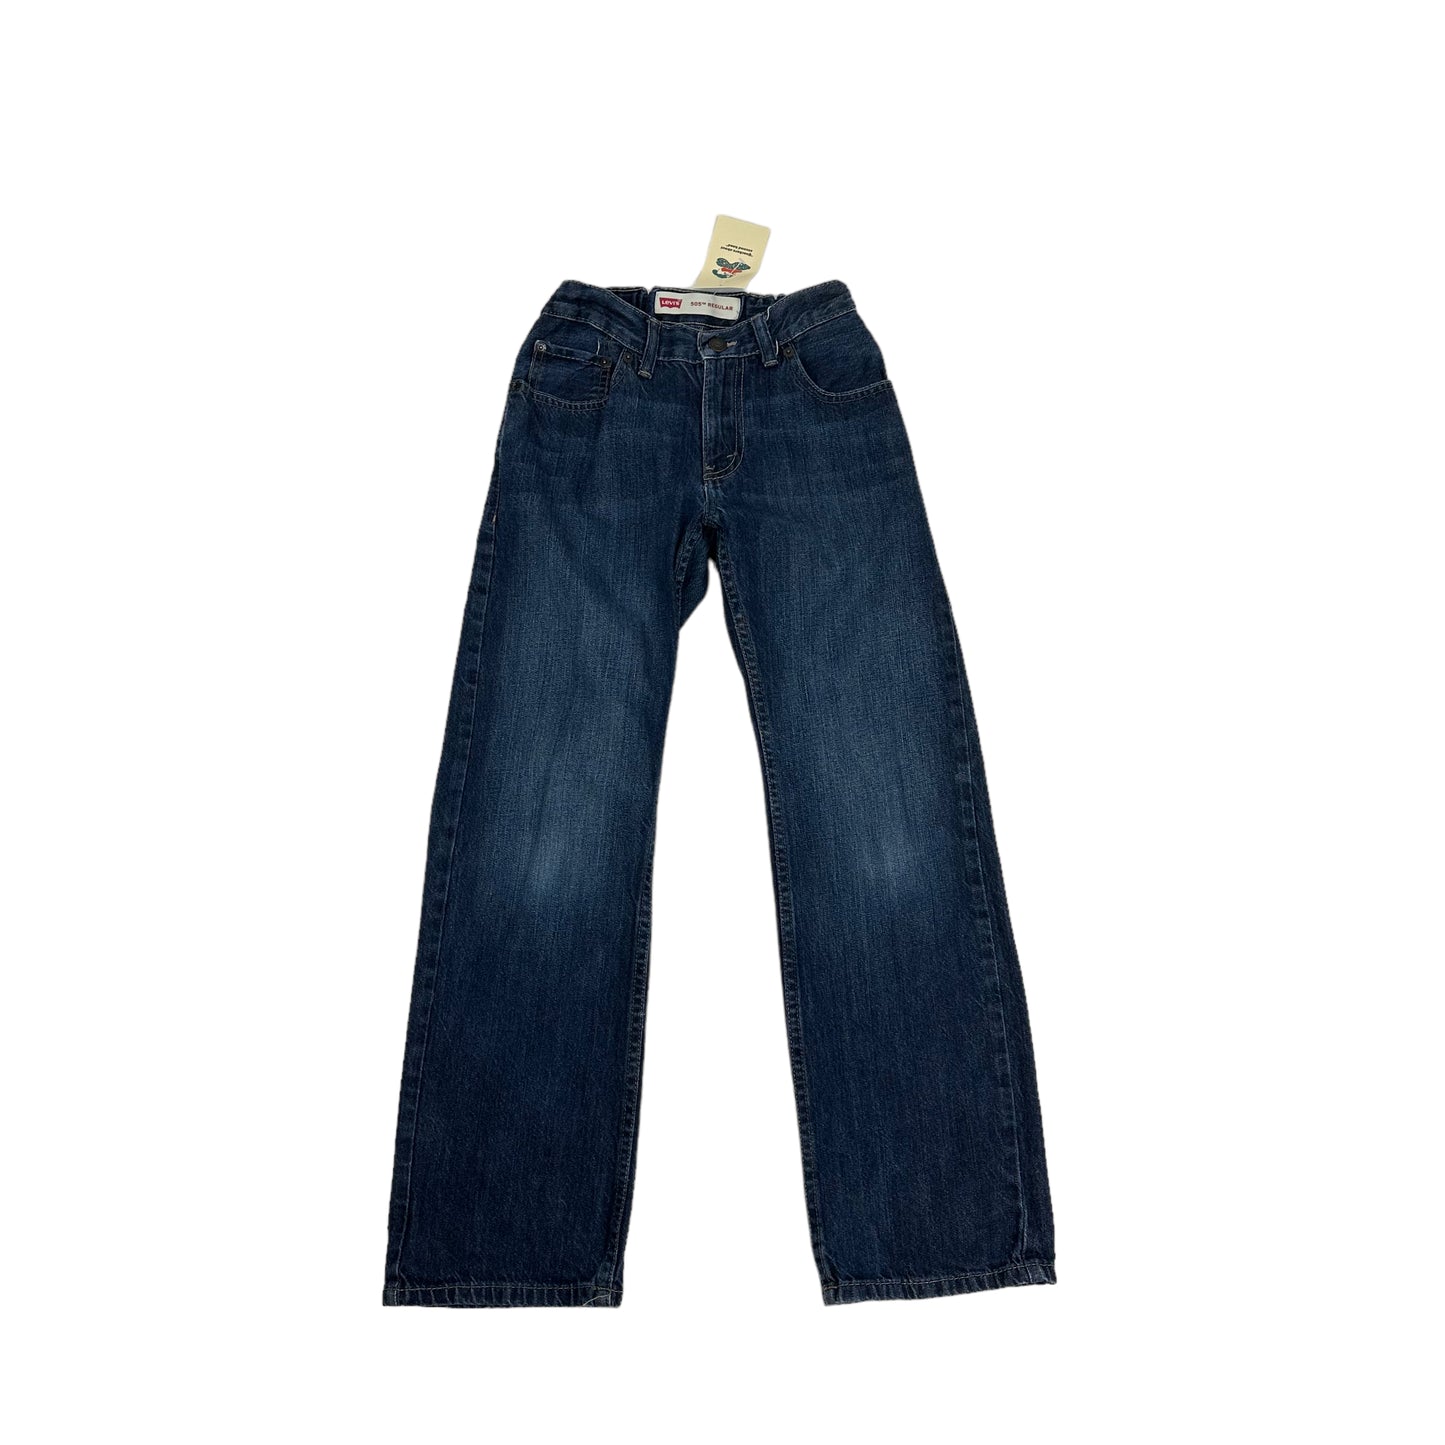 Vintage Levi's 505 Jeans (Age 12)